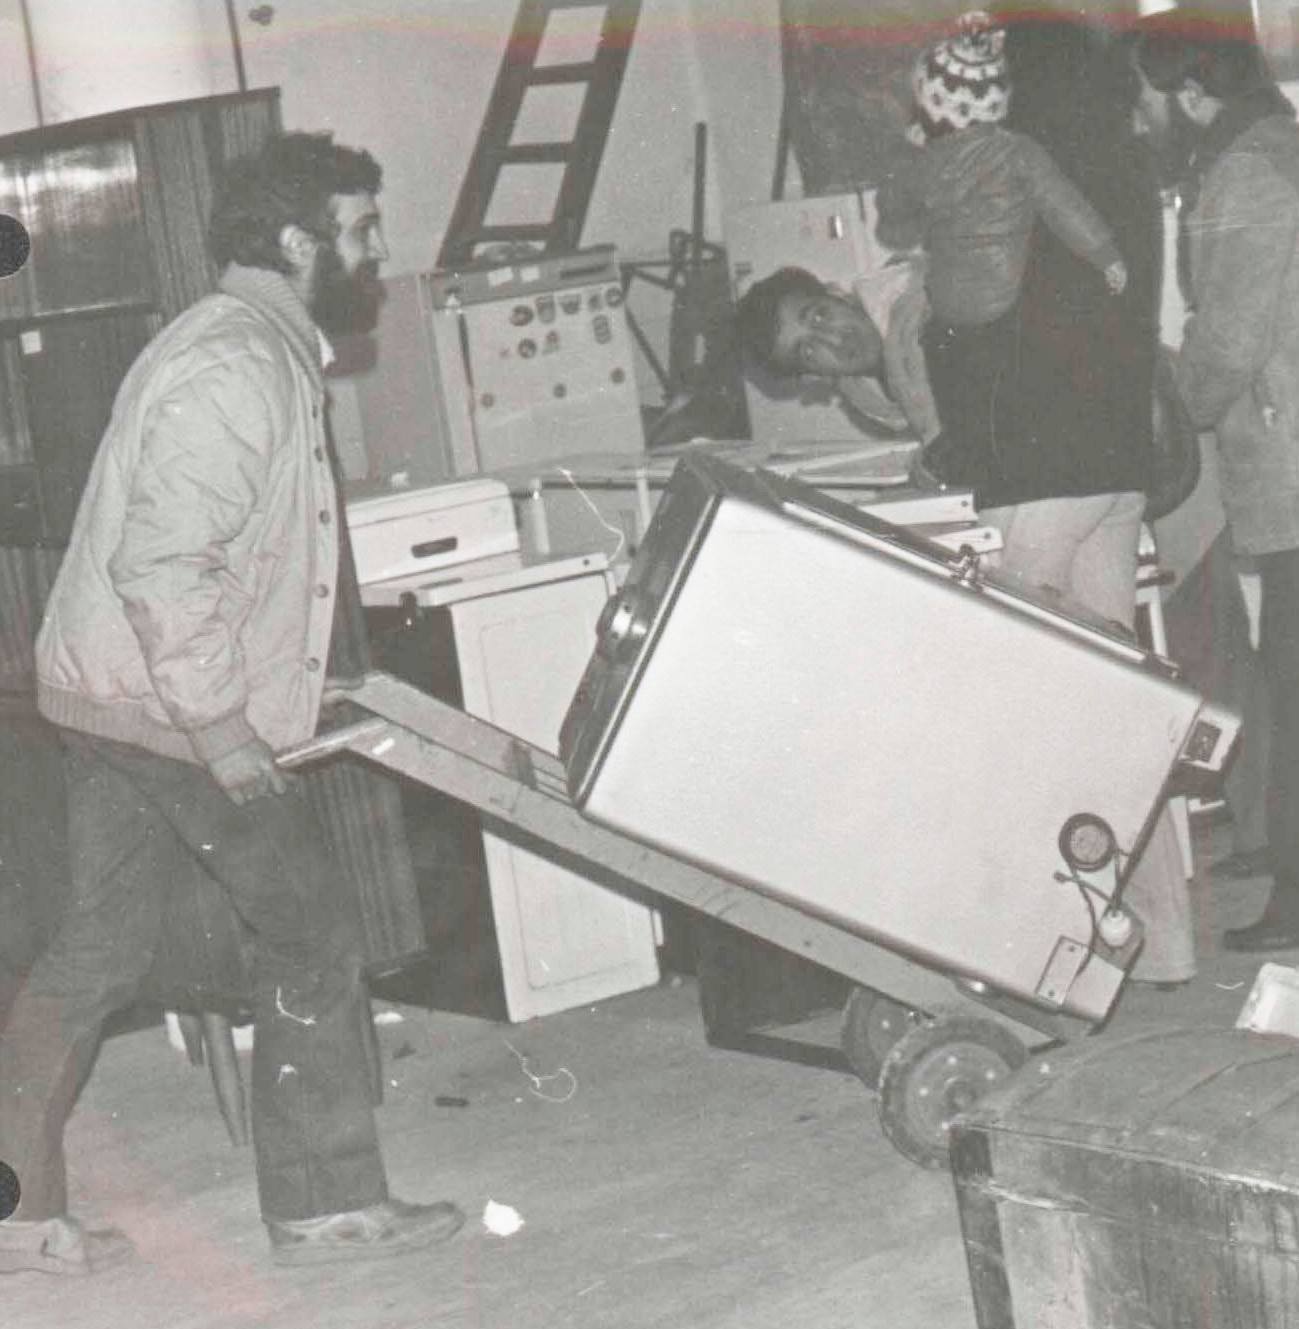 1981 Collecte SélectivernParticipation active, aux côtés de l'équipe Lorea, au premier projet pilote de Collecte Sélective de Navarre.